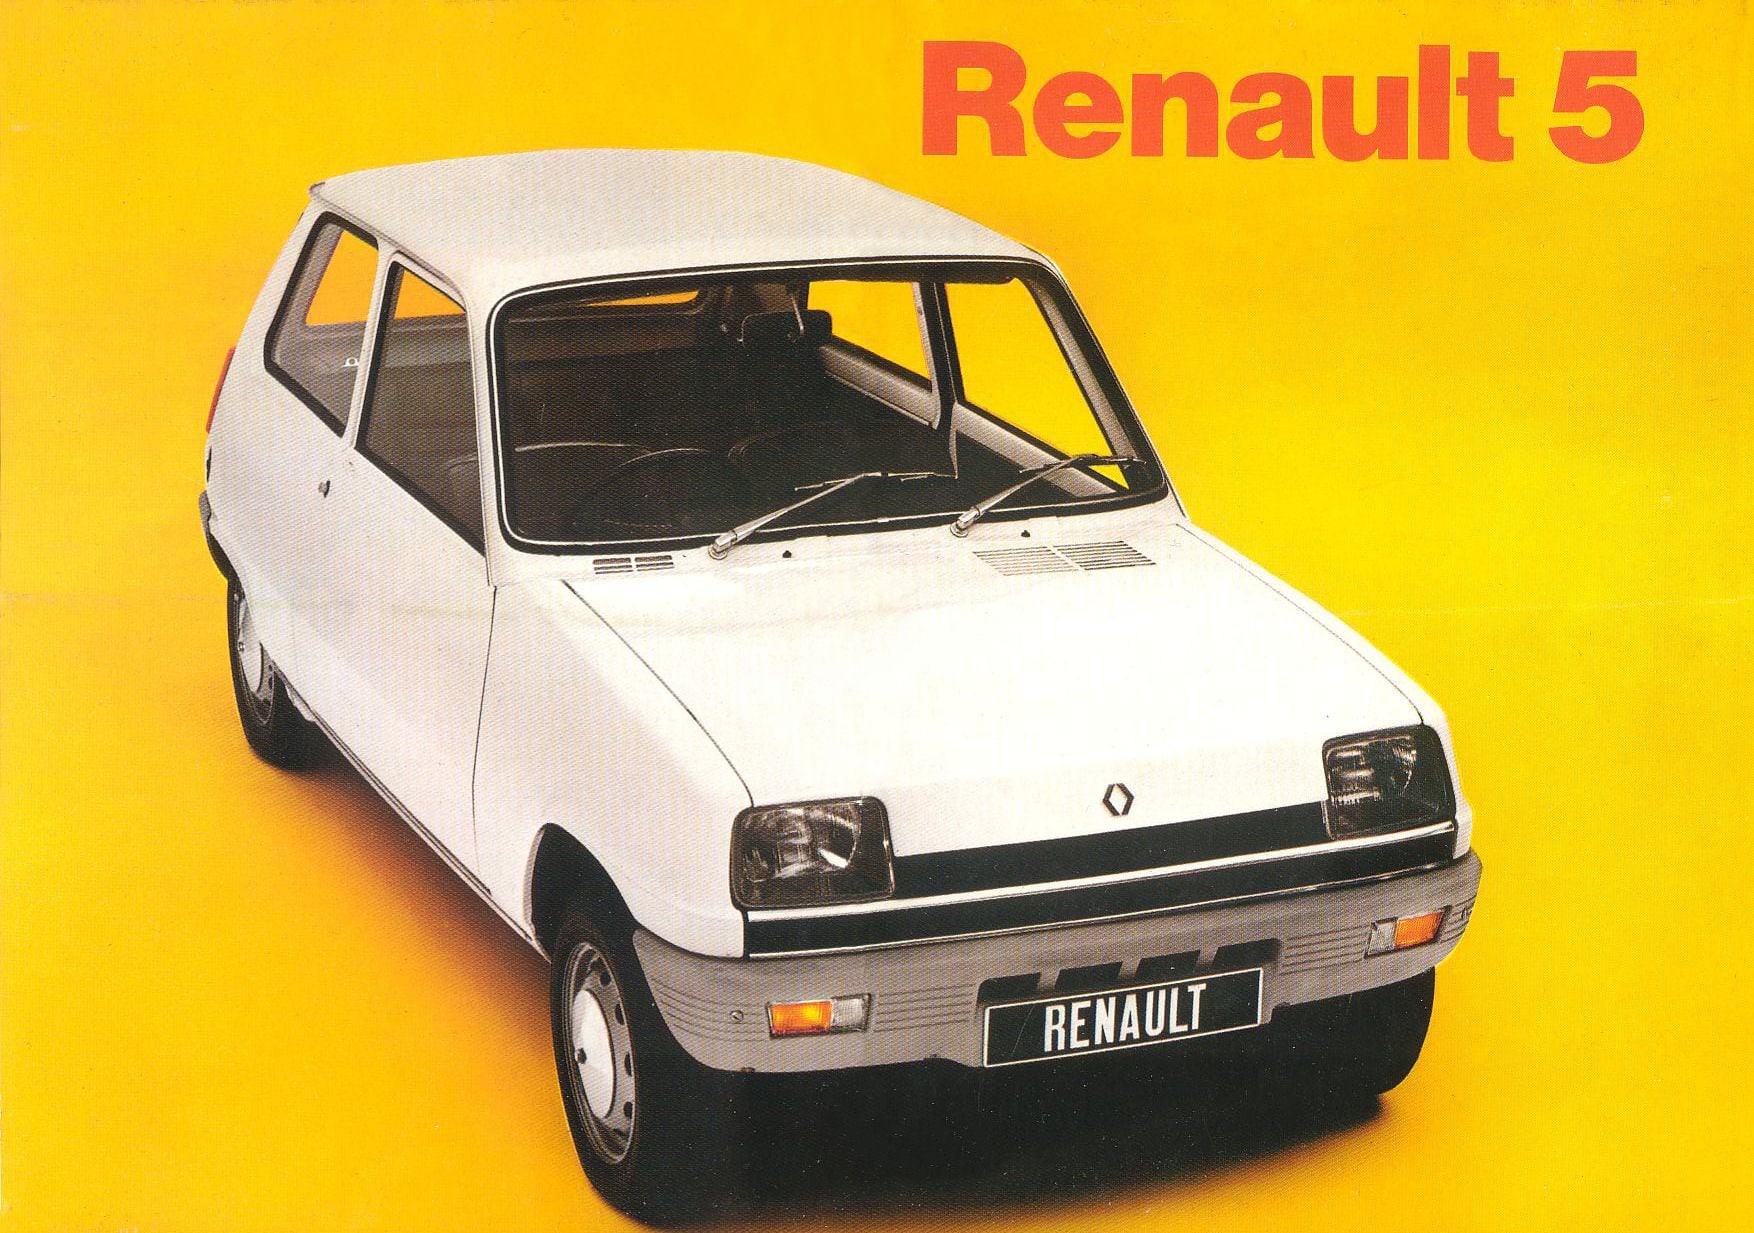 İkonik model Renault 5 yıllar sonra geri dönüyor